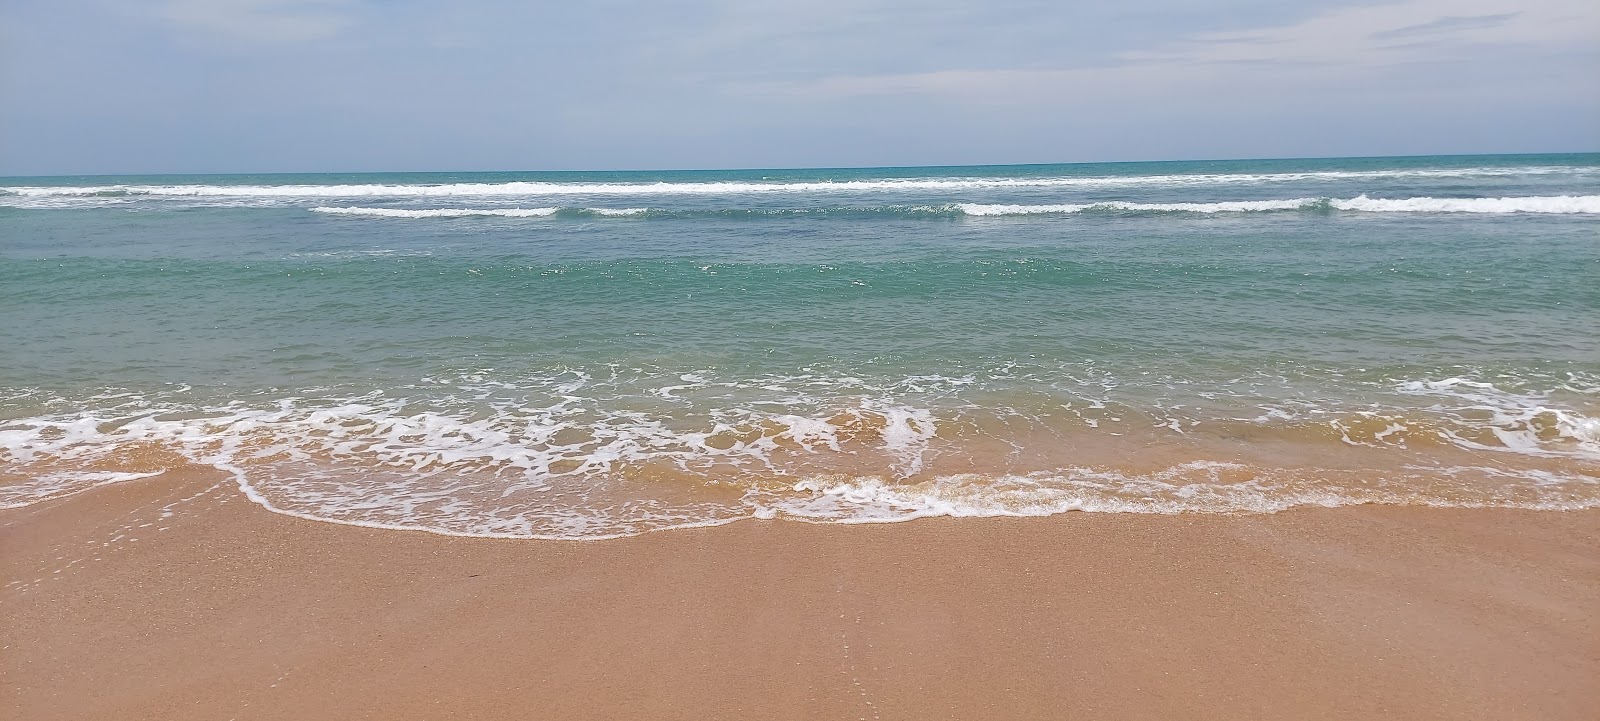 Photo de Kooduthalai beach avec l'eau cristalline de surface